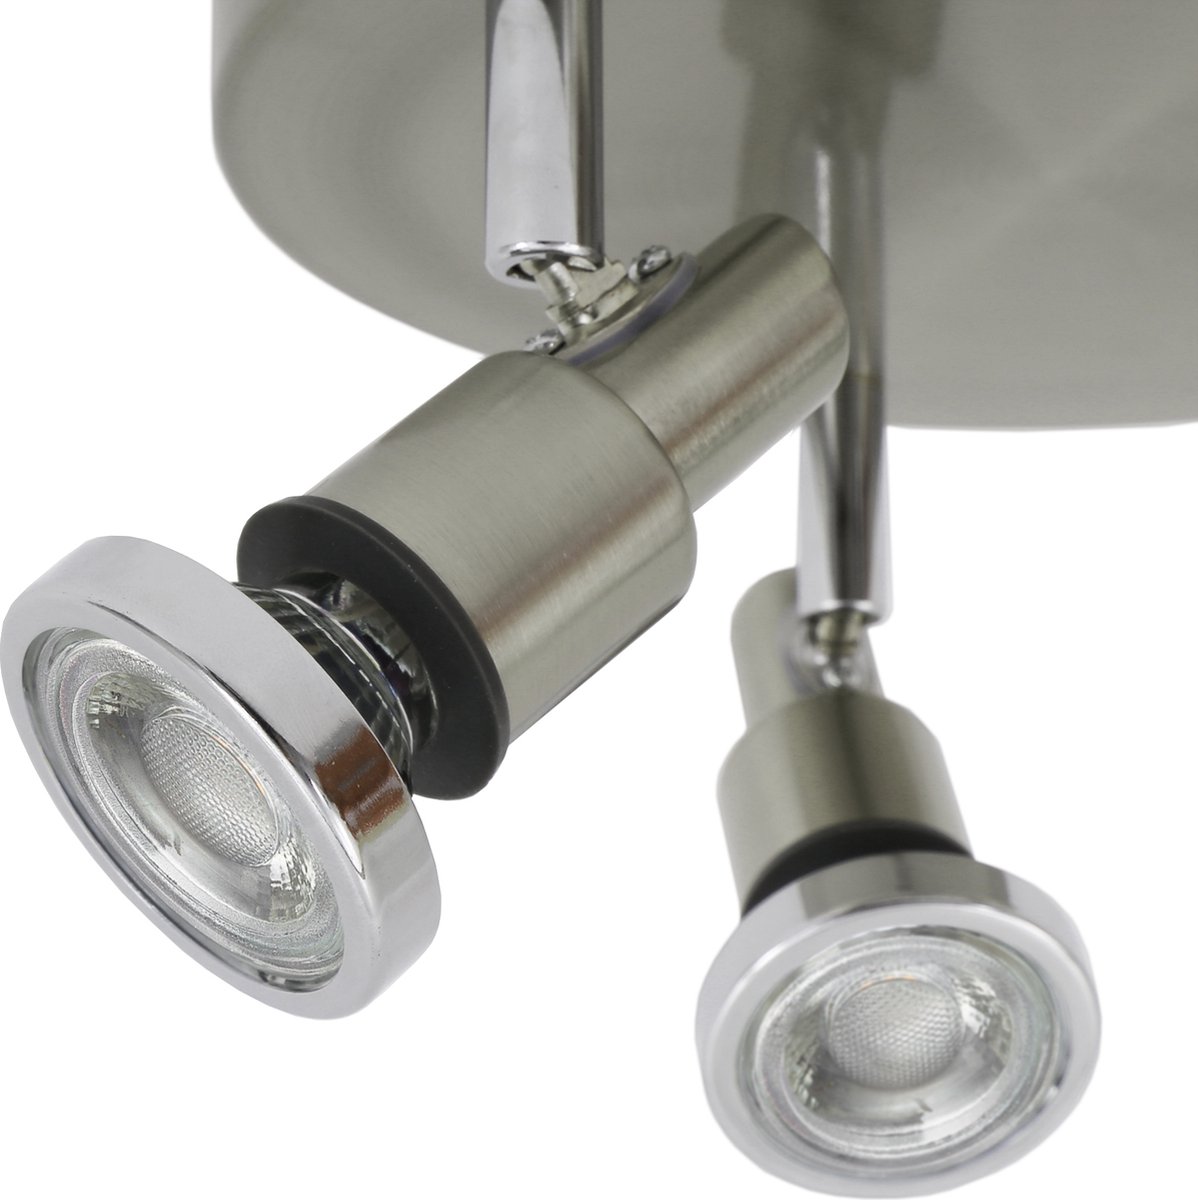 B.K.Licht Plafonnier Applique LED orientable 2 spots I 2 ampoules 5W 400lm  GU10 incl. I IP44 I Plafonnier lampe salle de bain